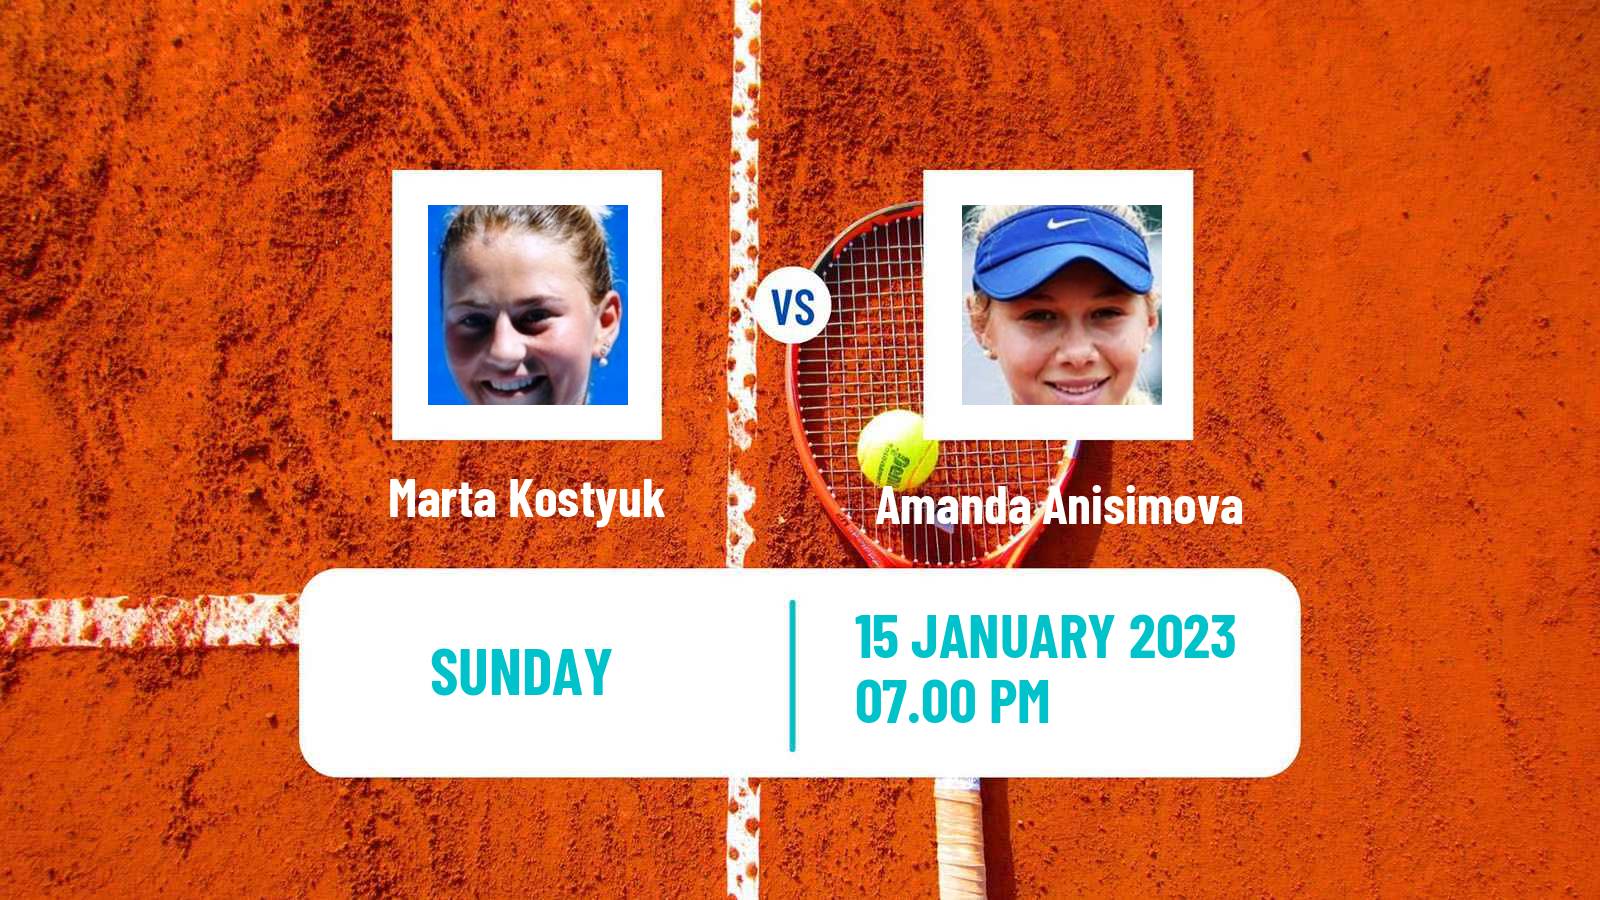 Tennis WTA Australian Open Marta Kostyuk - Amanda Anisimova